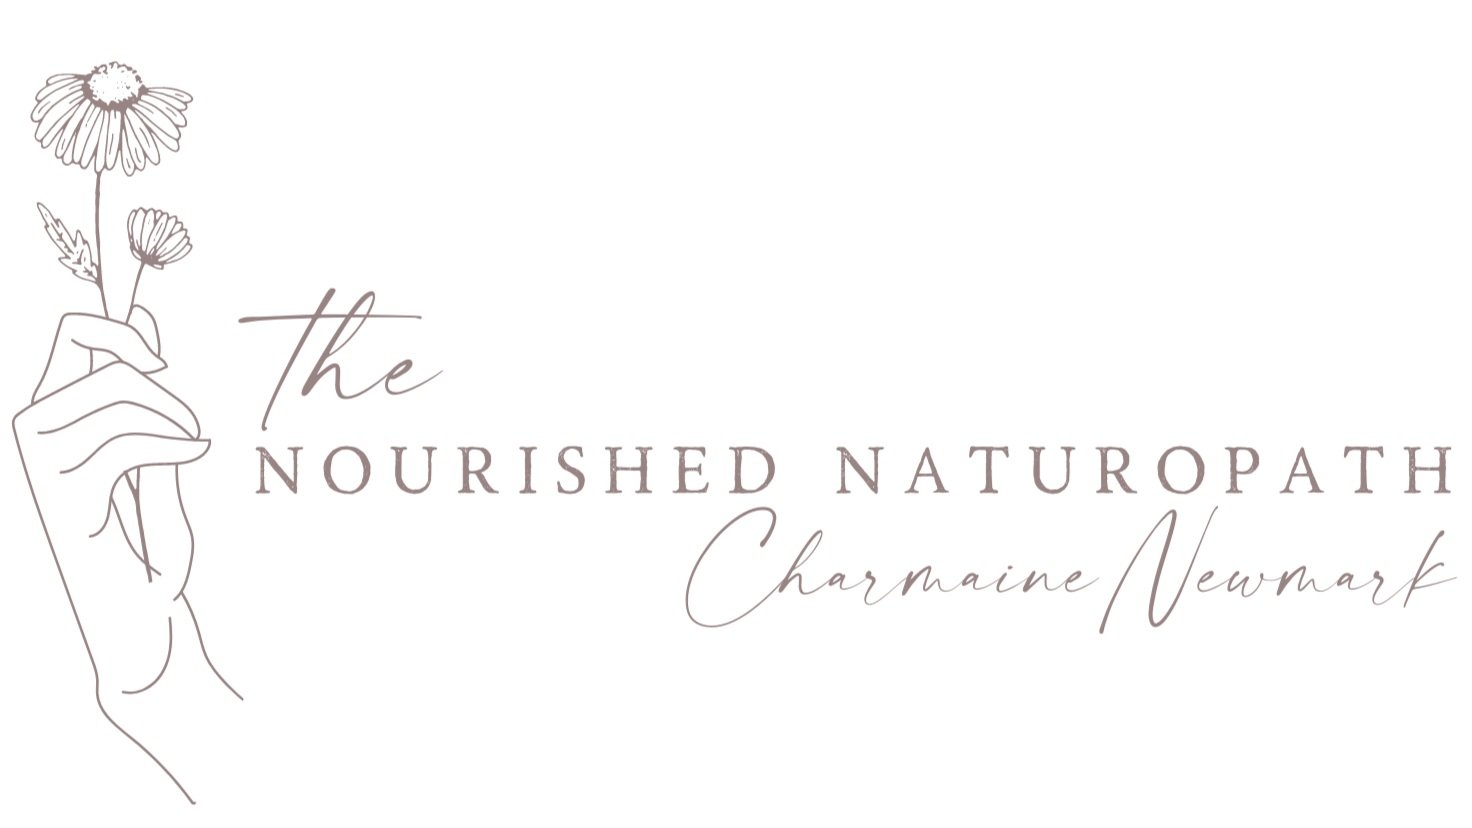 Charmaine Newmark - The Nourished Naturopath